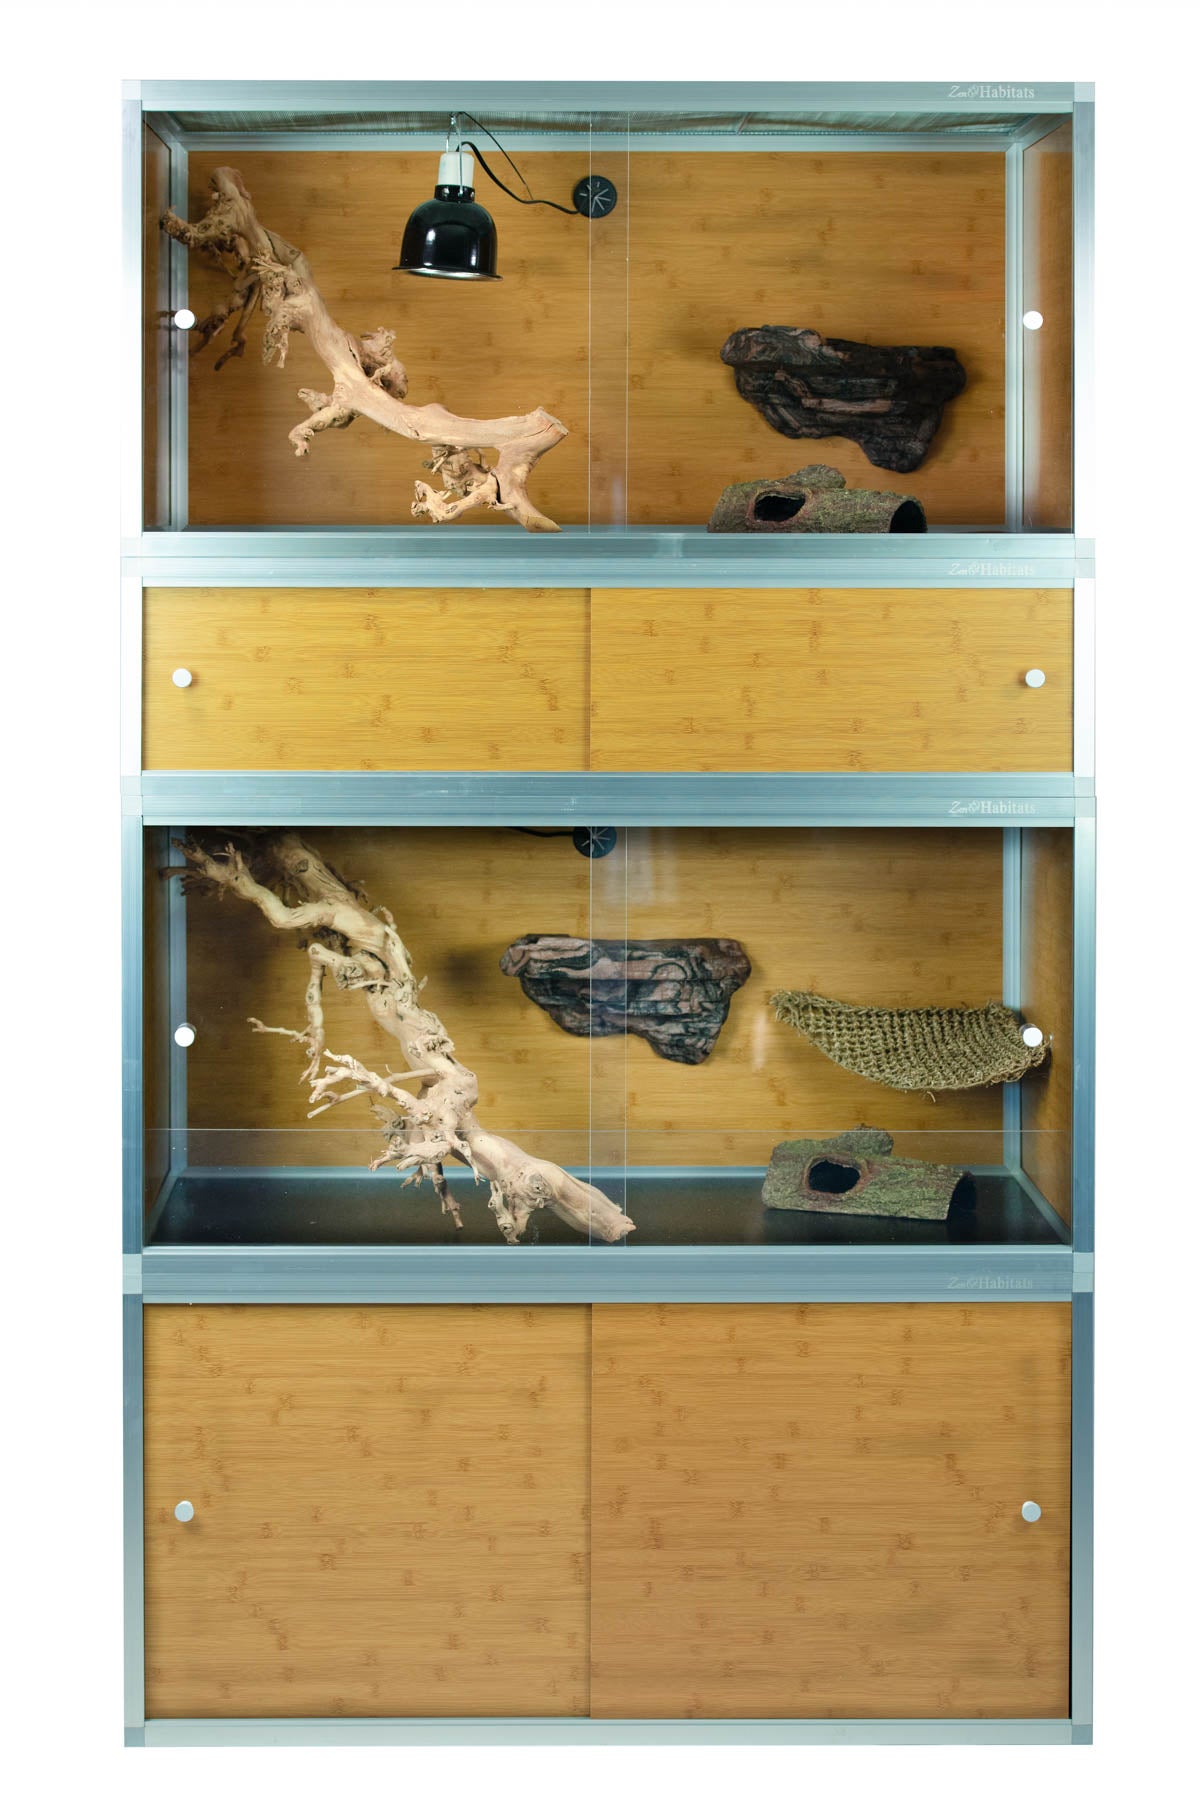 4 X2 X2 Reptile Enclosure W Wood Panels Zen Habitats